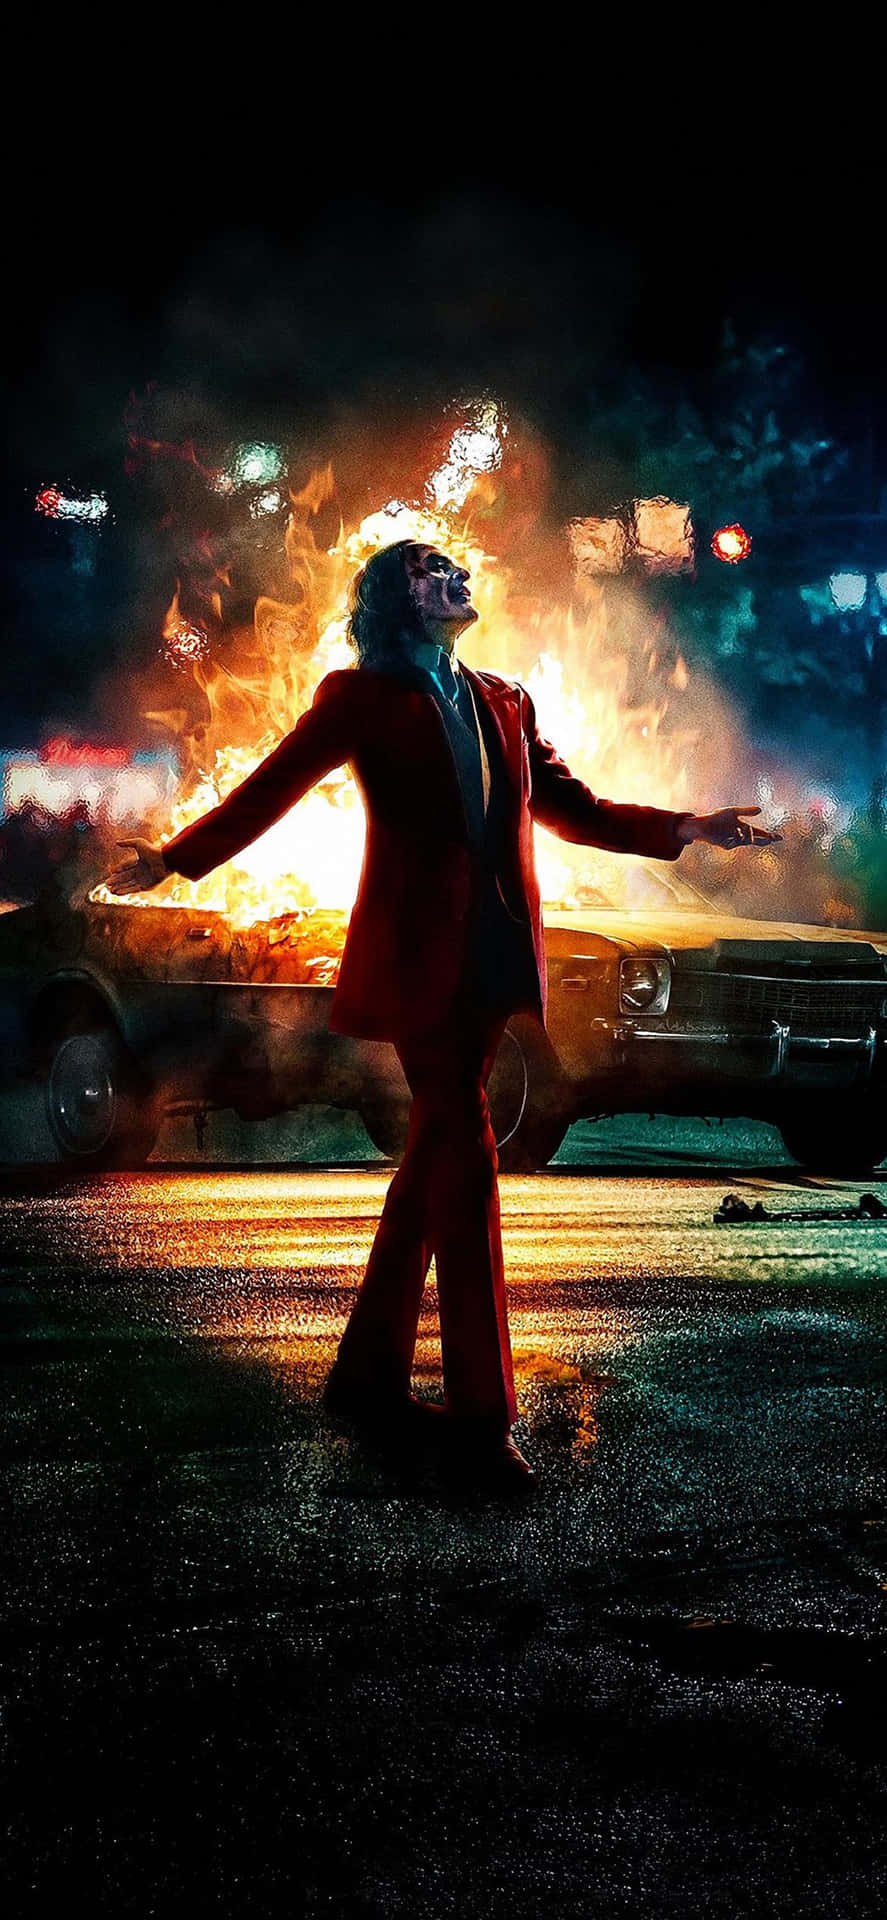 Et Joker filmplakat med en mand i rød stående foran en bil Wallpaper